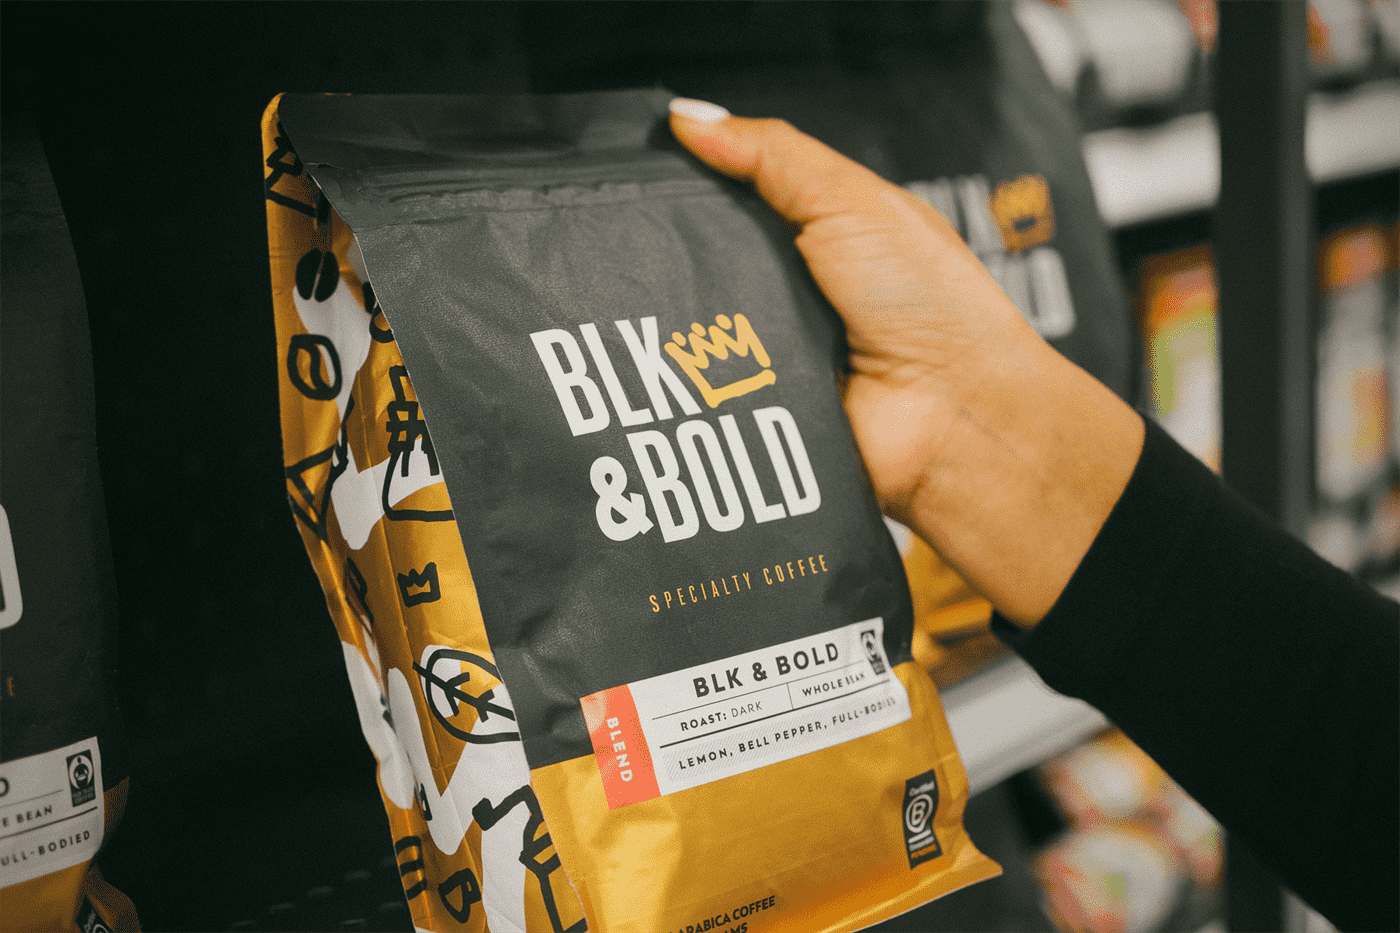 Một gói cà phê BLK & Bold được cầm bằng tay dựa vào một số kệ bán lẻ.